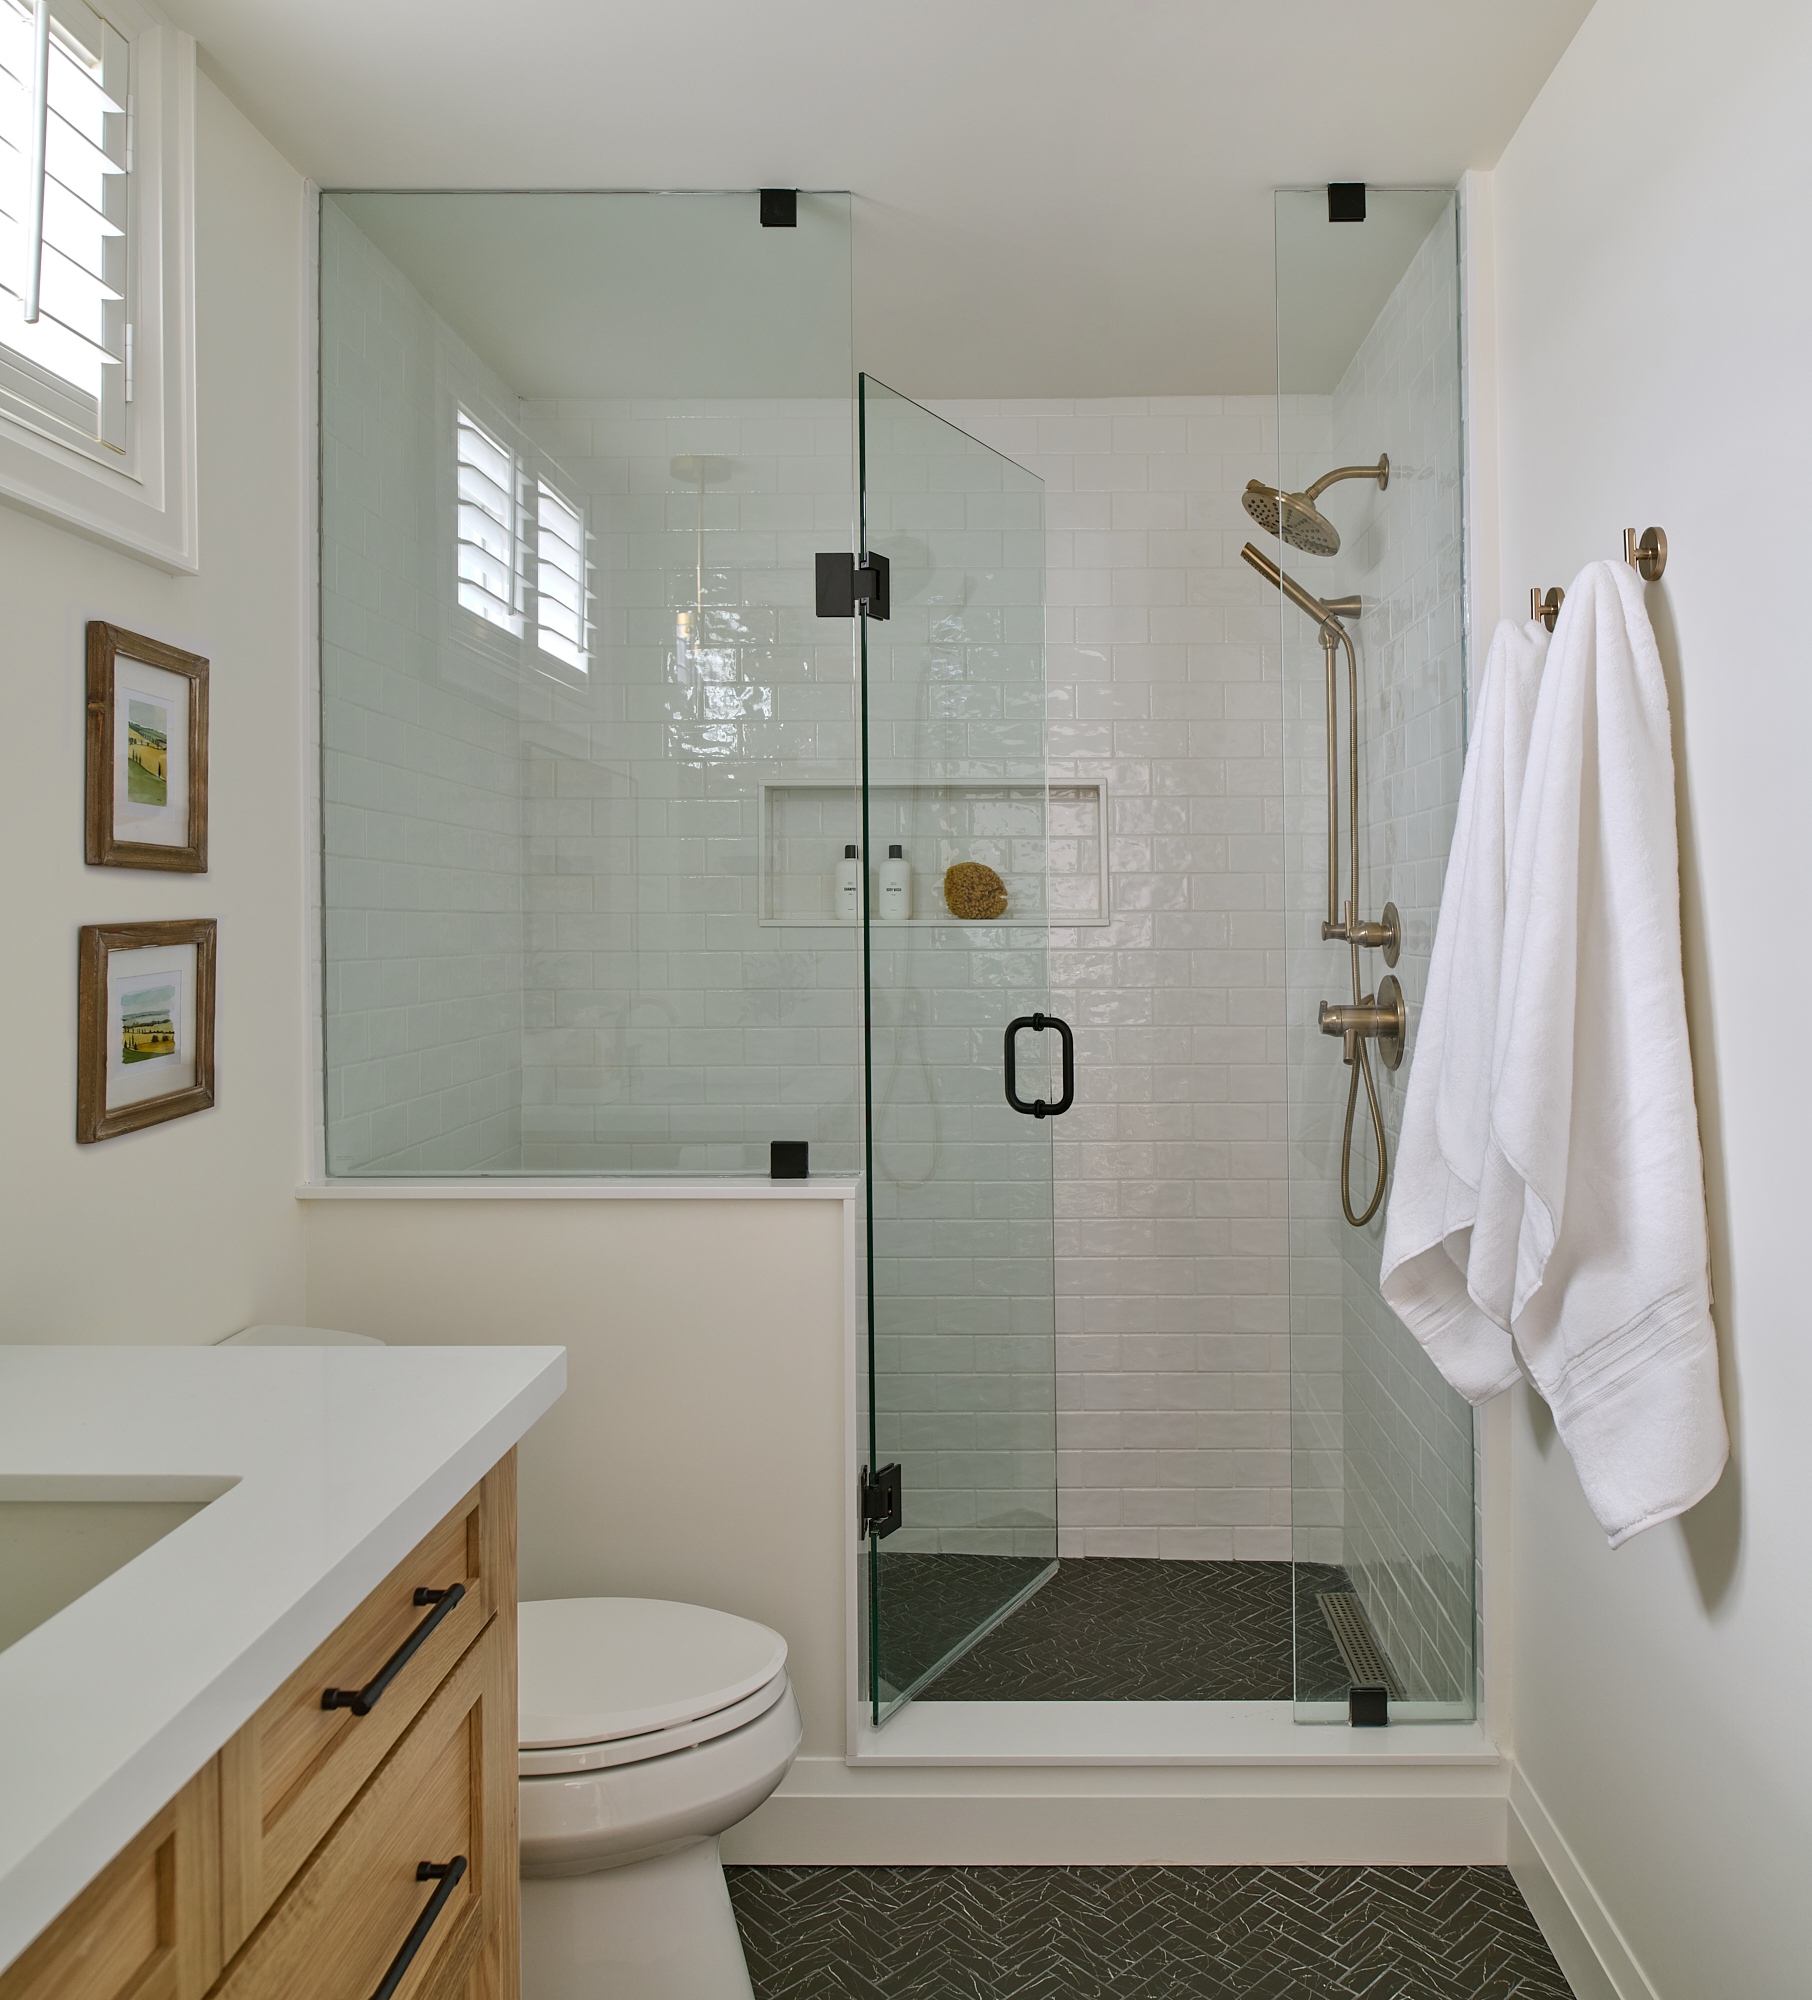 bathroom interior designed with oak wood vanity, gold plumbing fixtures and black herringbone floor tile